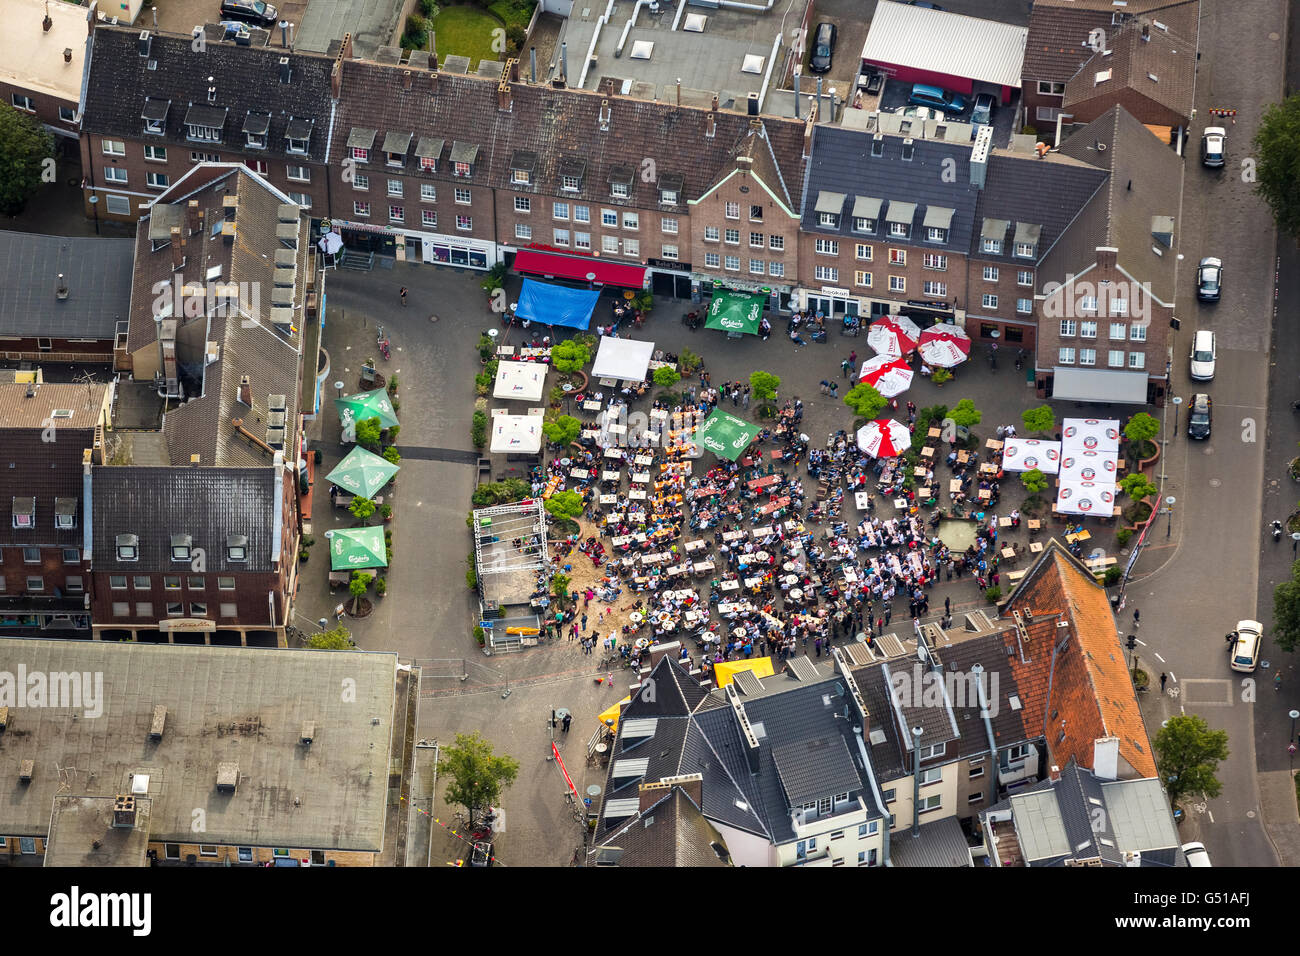 Vista aerea, il Campionato Mondiale di Calcio 2014, vista aerea, la visualizzazione pubblica sul mercato del grano in Wesel, Rudel guardando, outdoor tv, Wesel, Foto Stock